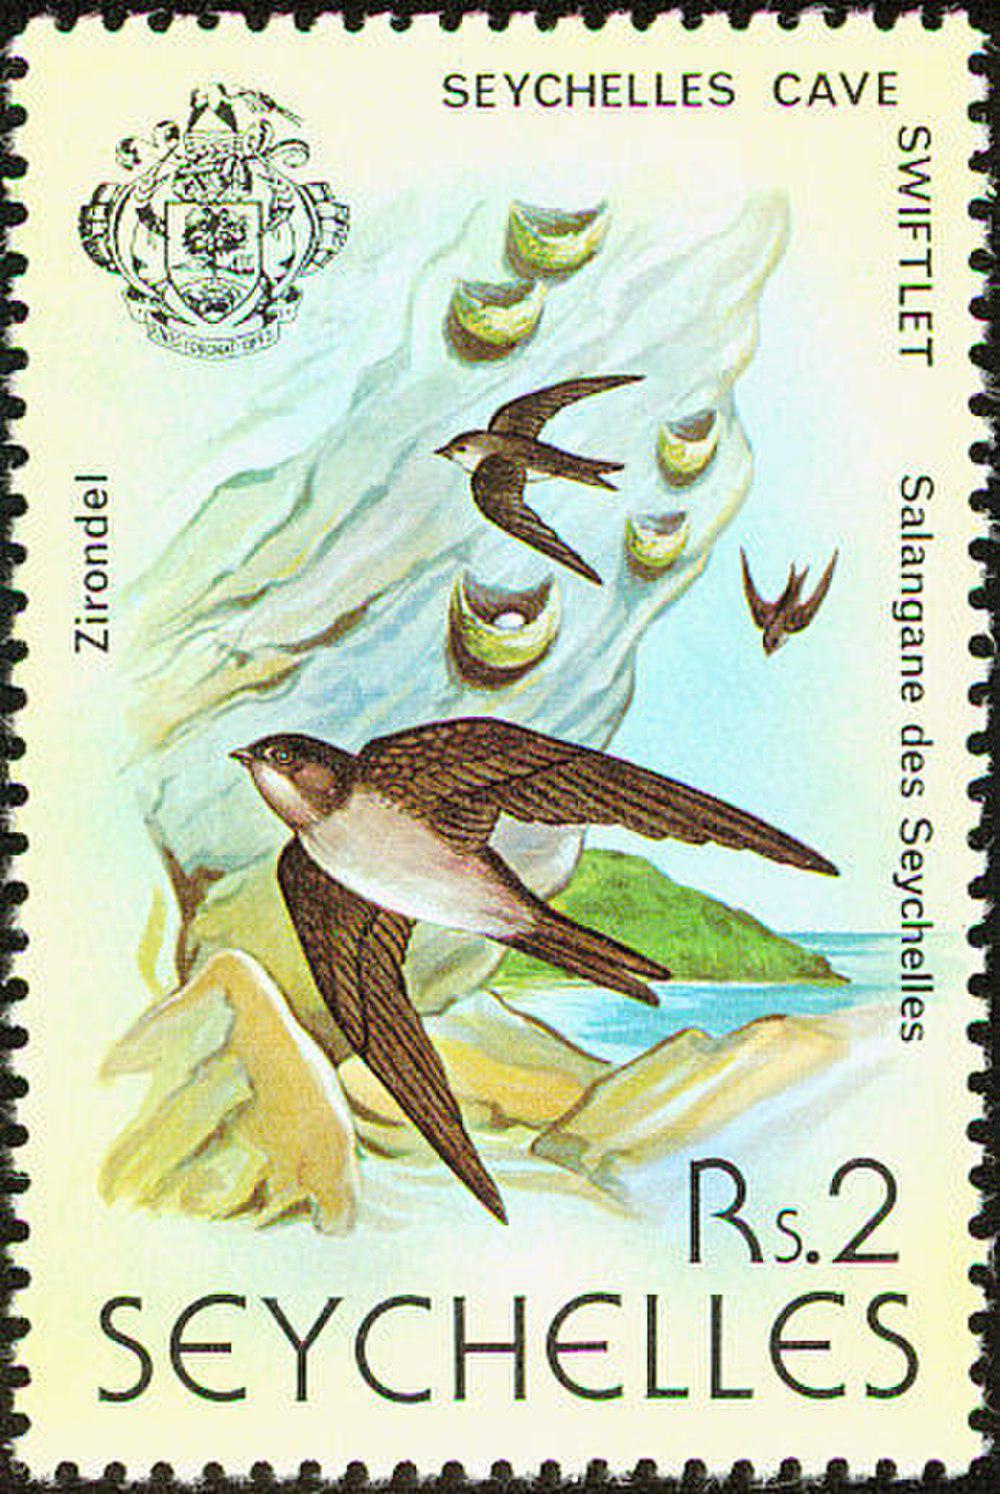 塞舌尔金丝燕 / Seychelles Swiftlet / Aerodramus elaphrus